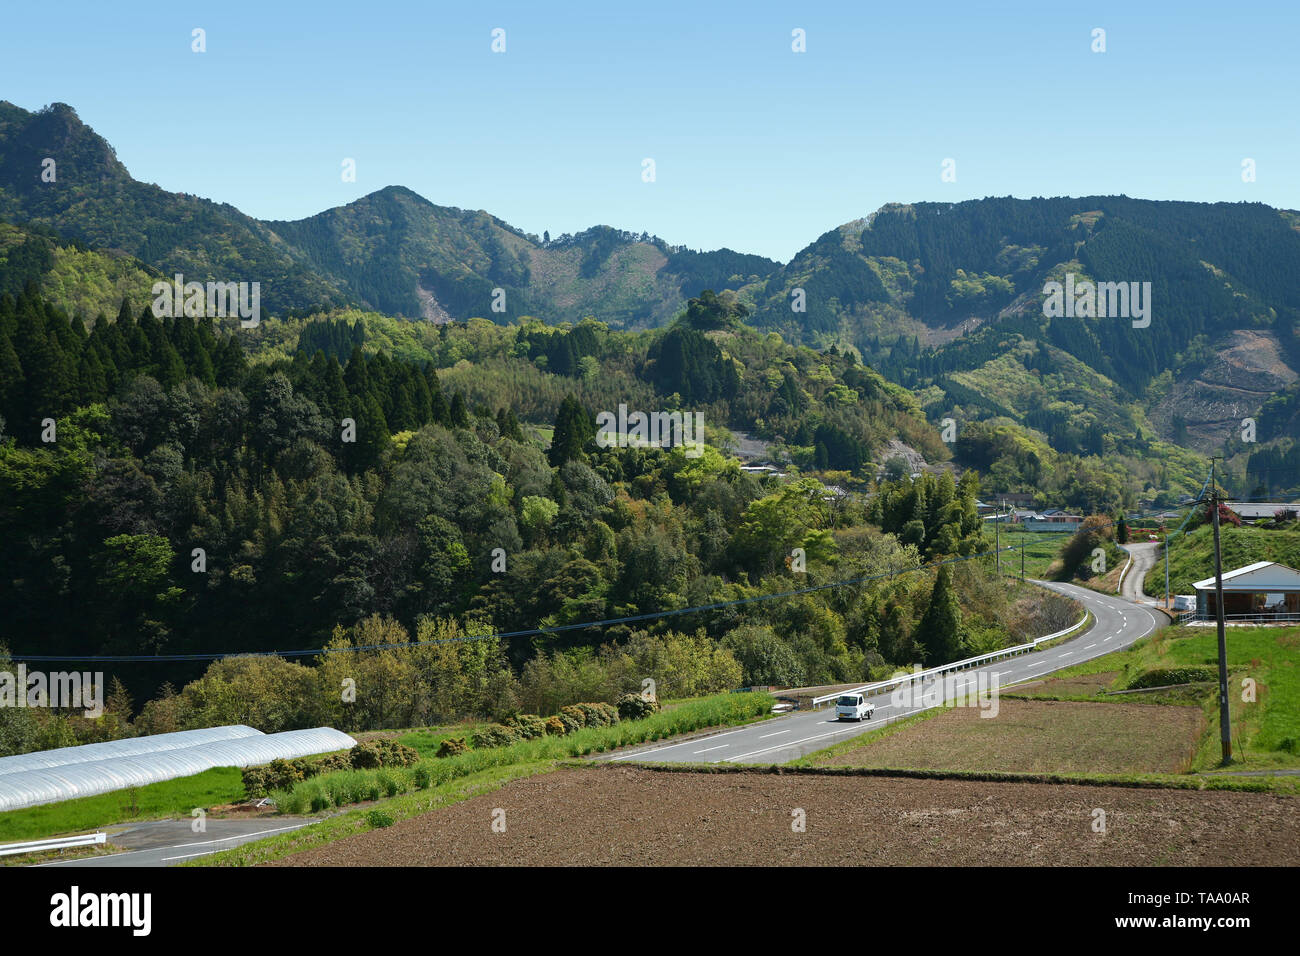 Affichage de la zone agricole rurale, dans la préfecture de Miyazaki Japon Banque D'Images